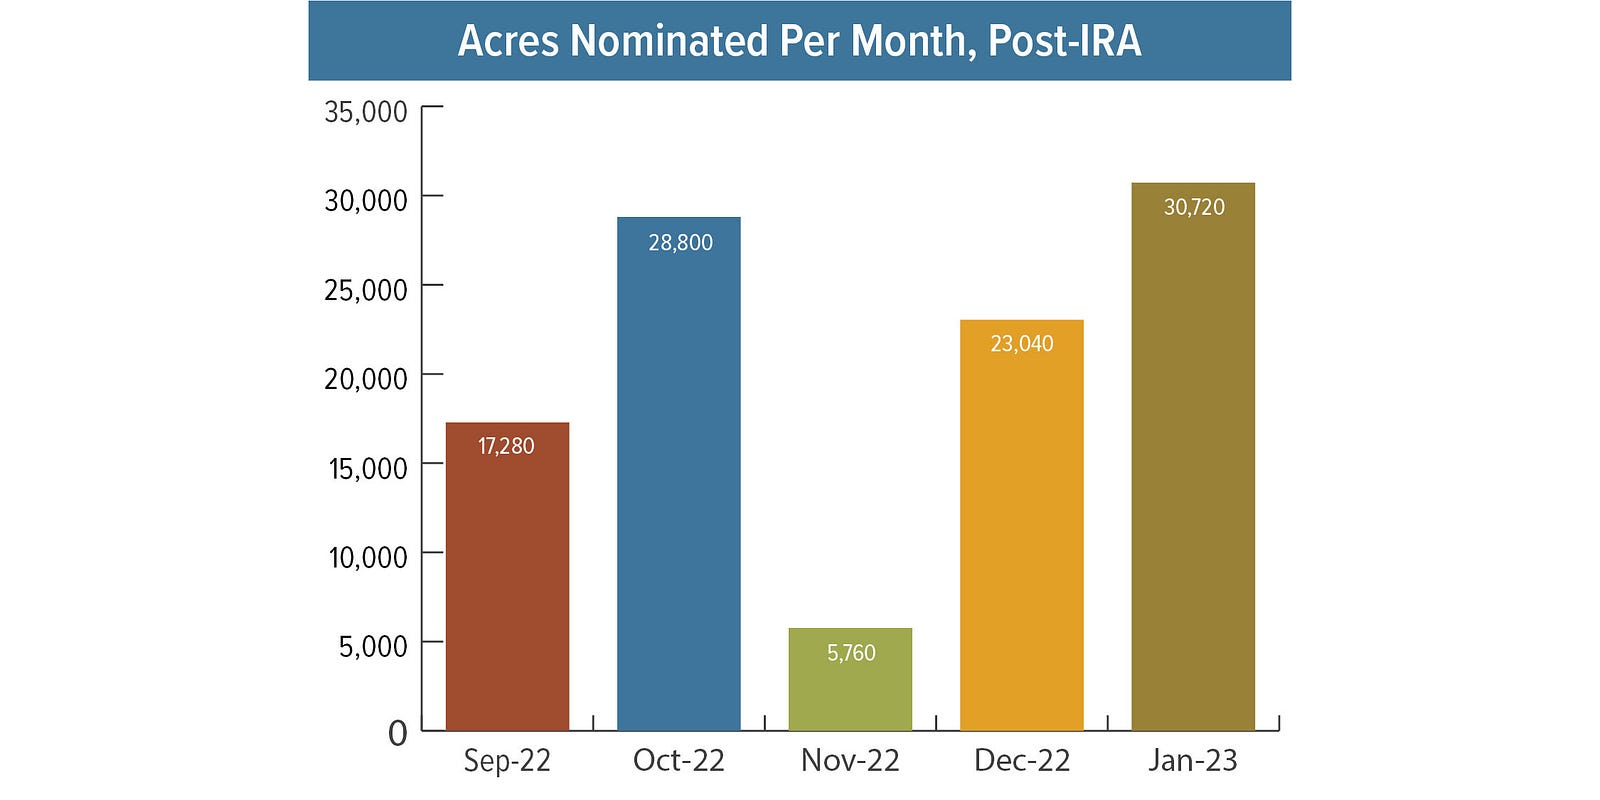 Bar chart: Acres nominated per month, post-IRA. Sep-22: 17,280. Oct-22: 28,800. Nov-22: 5,760. Dec-22: 22,040. Jan-23: 30,720